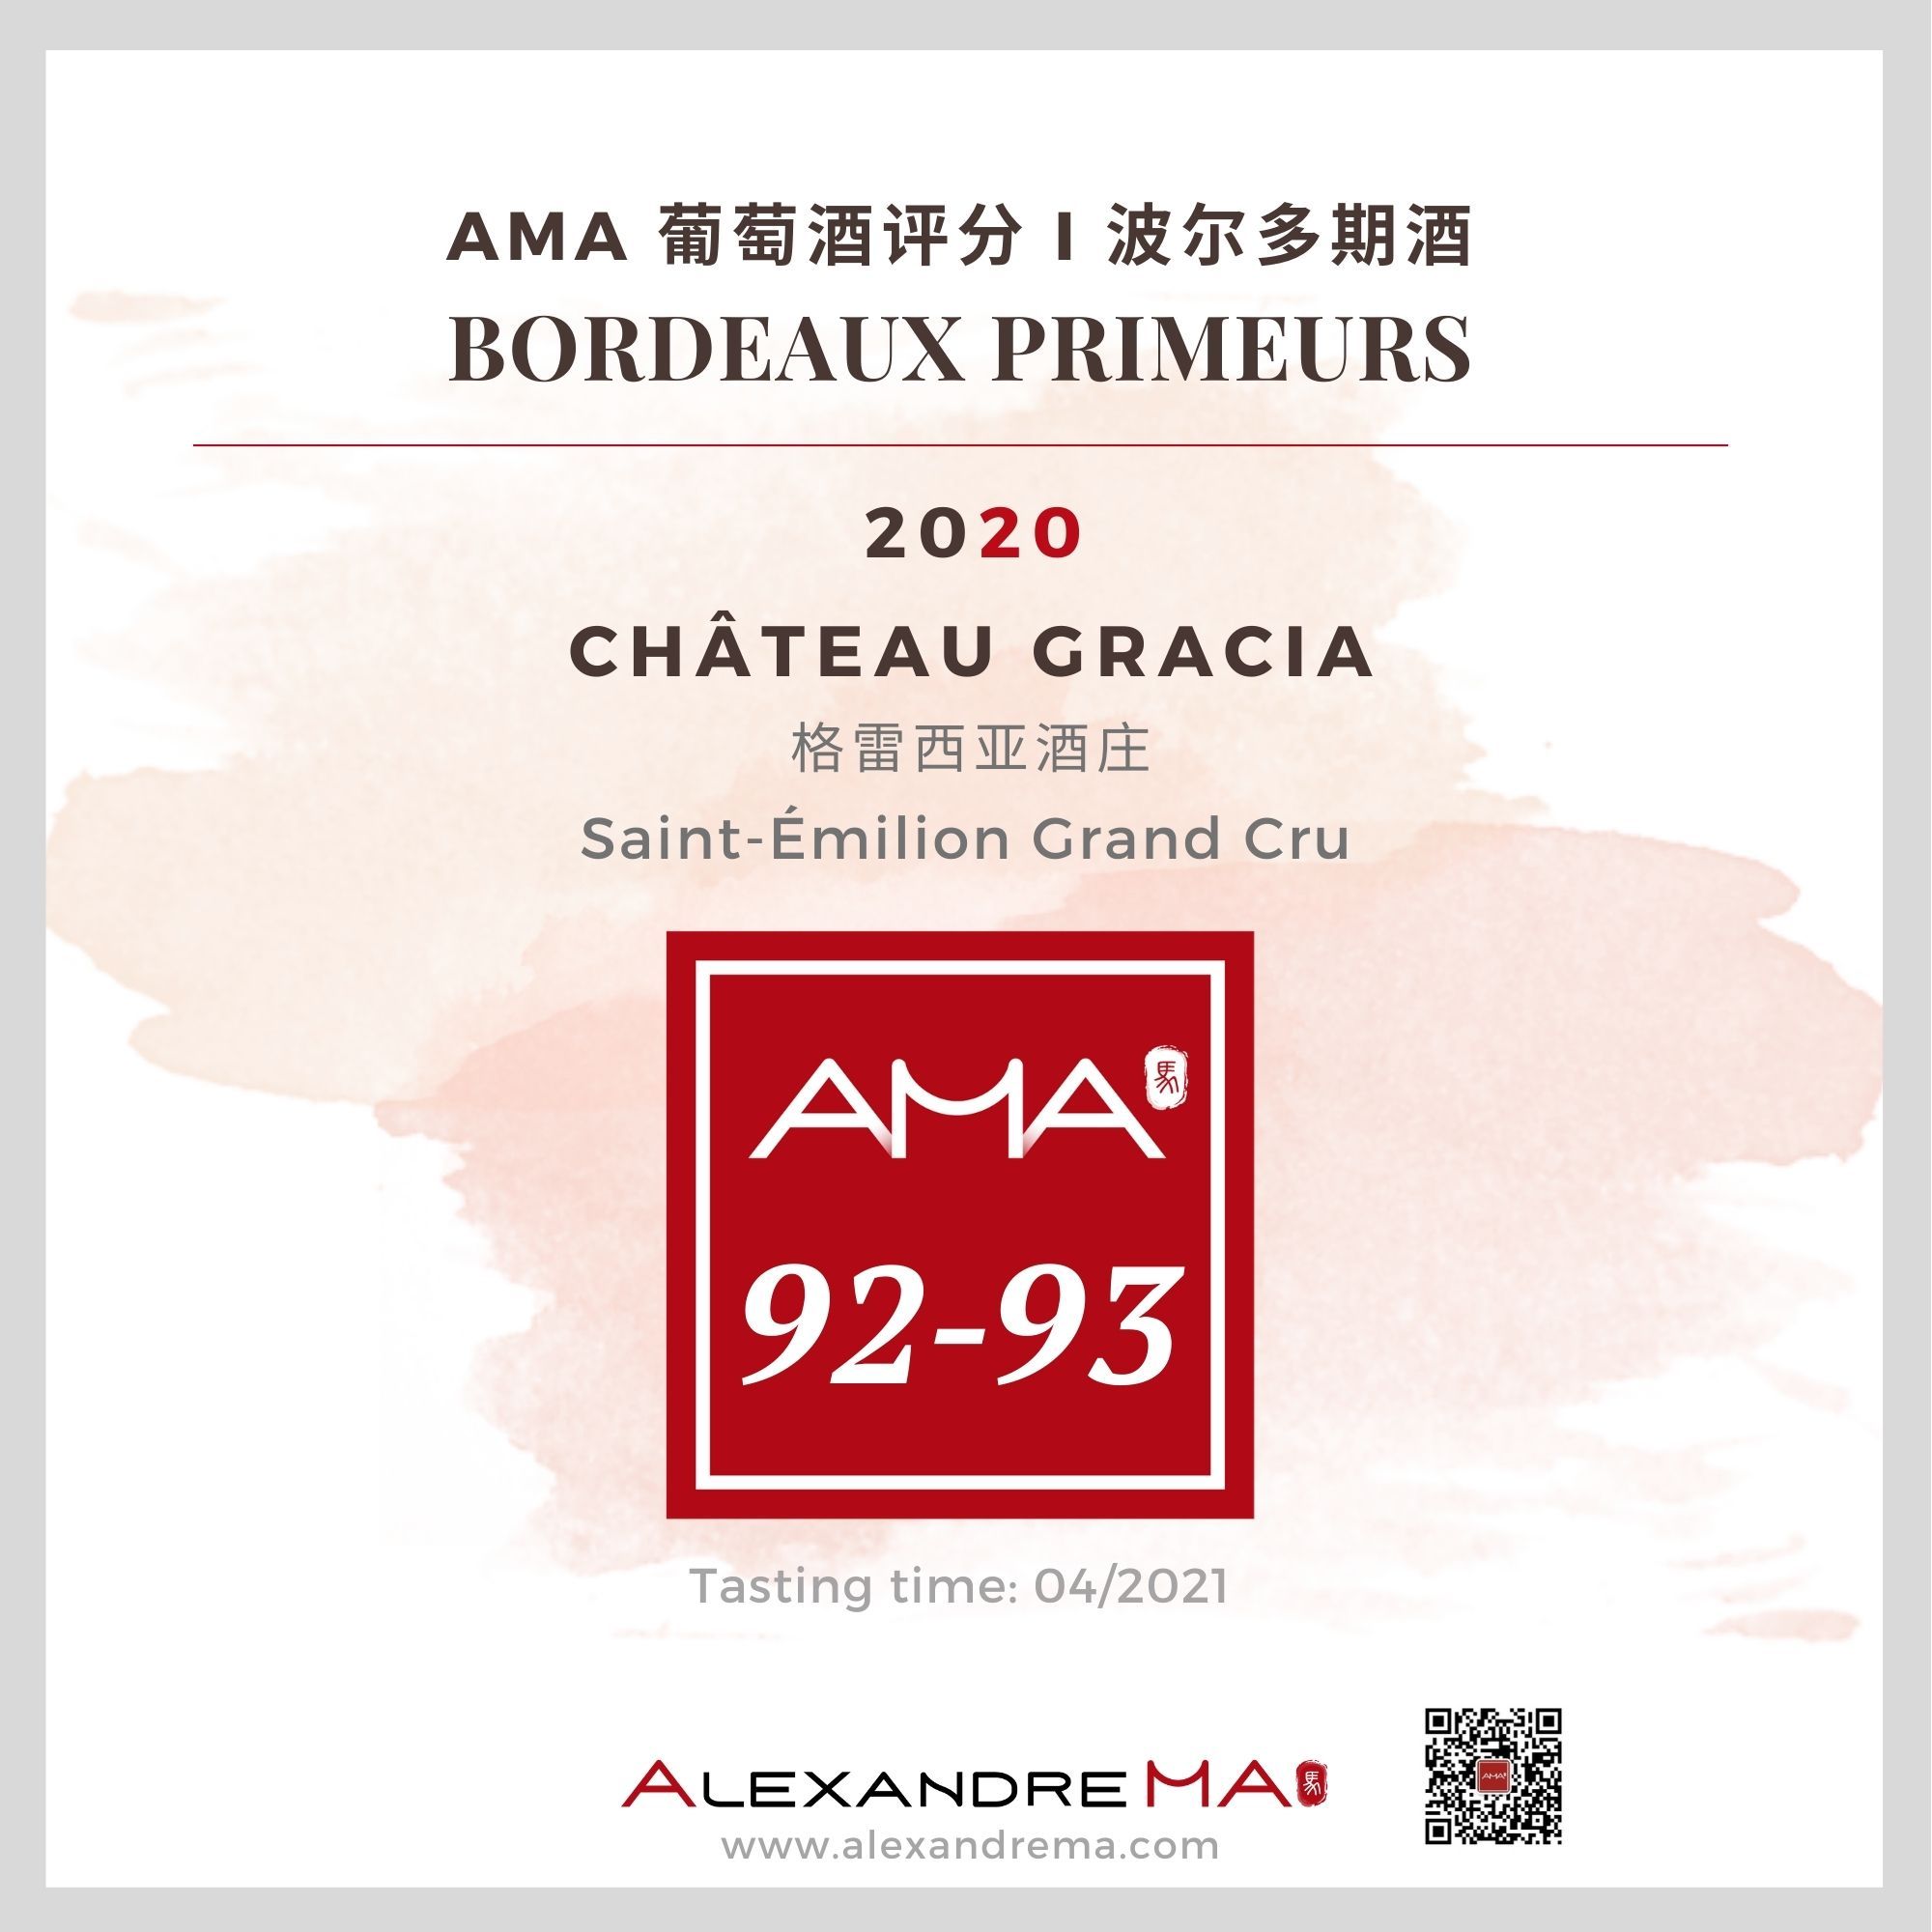 Château Gracia 2020 格雷西亚酒庄 - Alexandre Ma